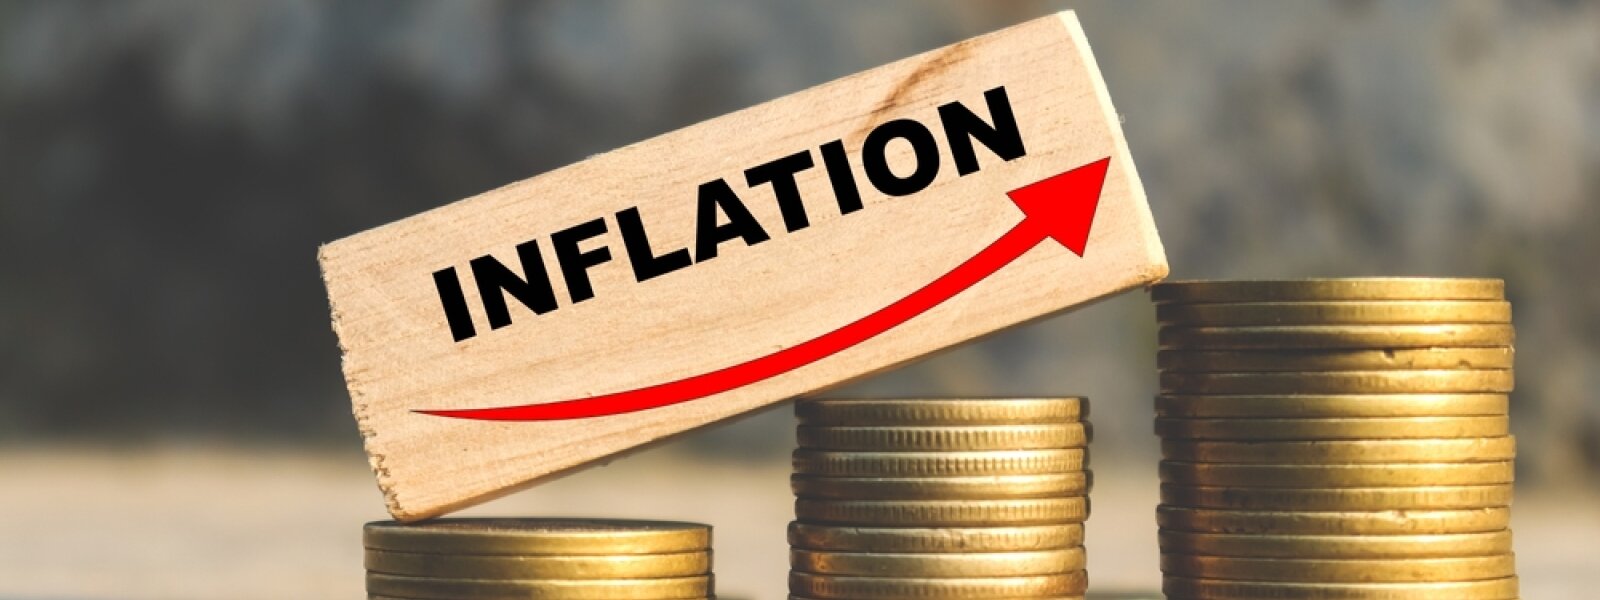 Что такое инфляция: определение, причины, последствия